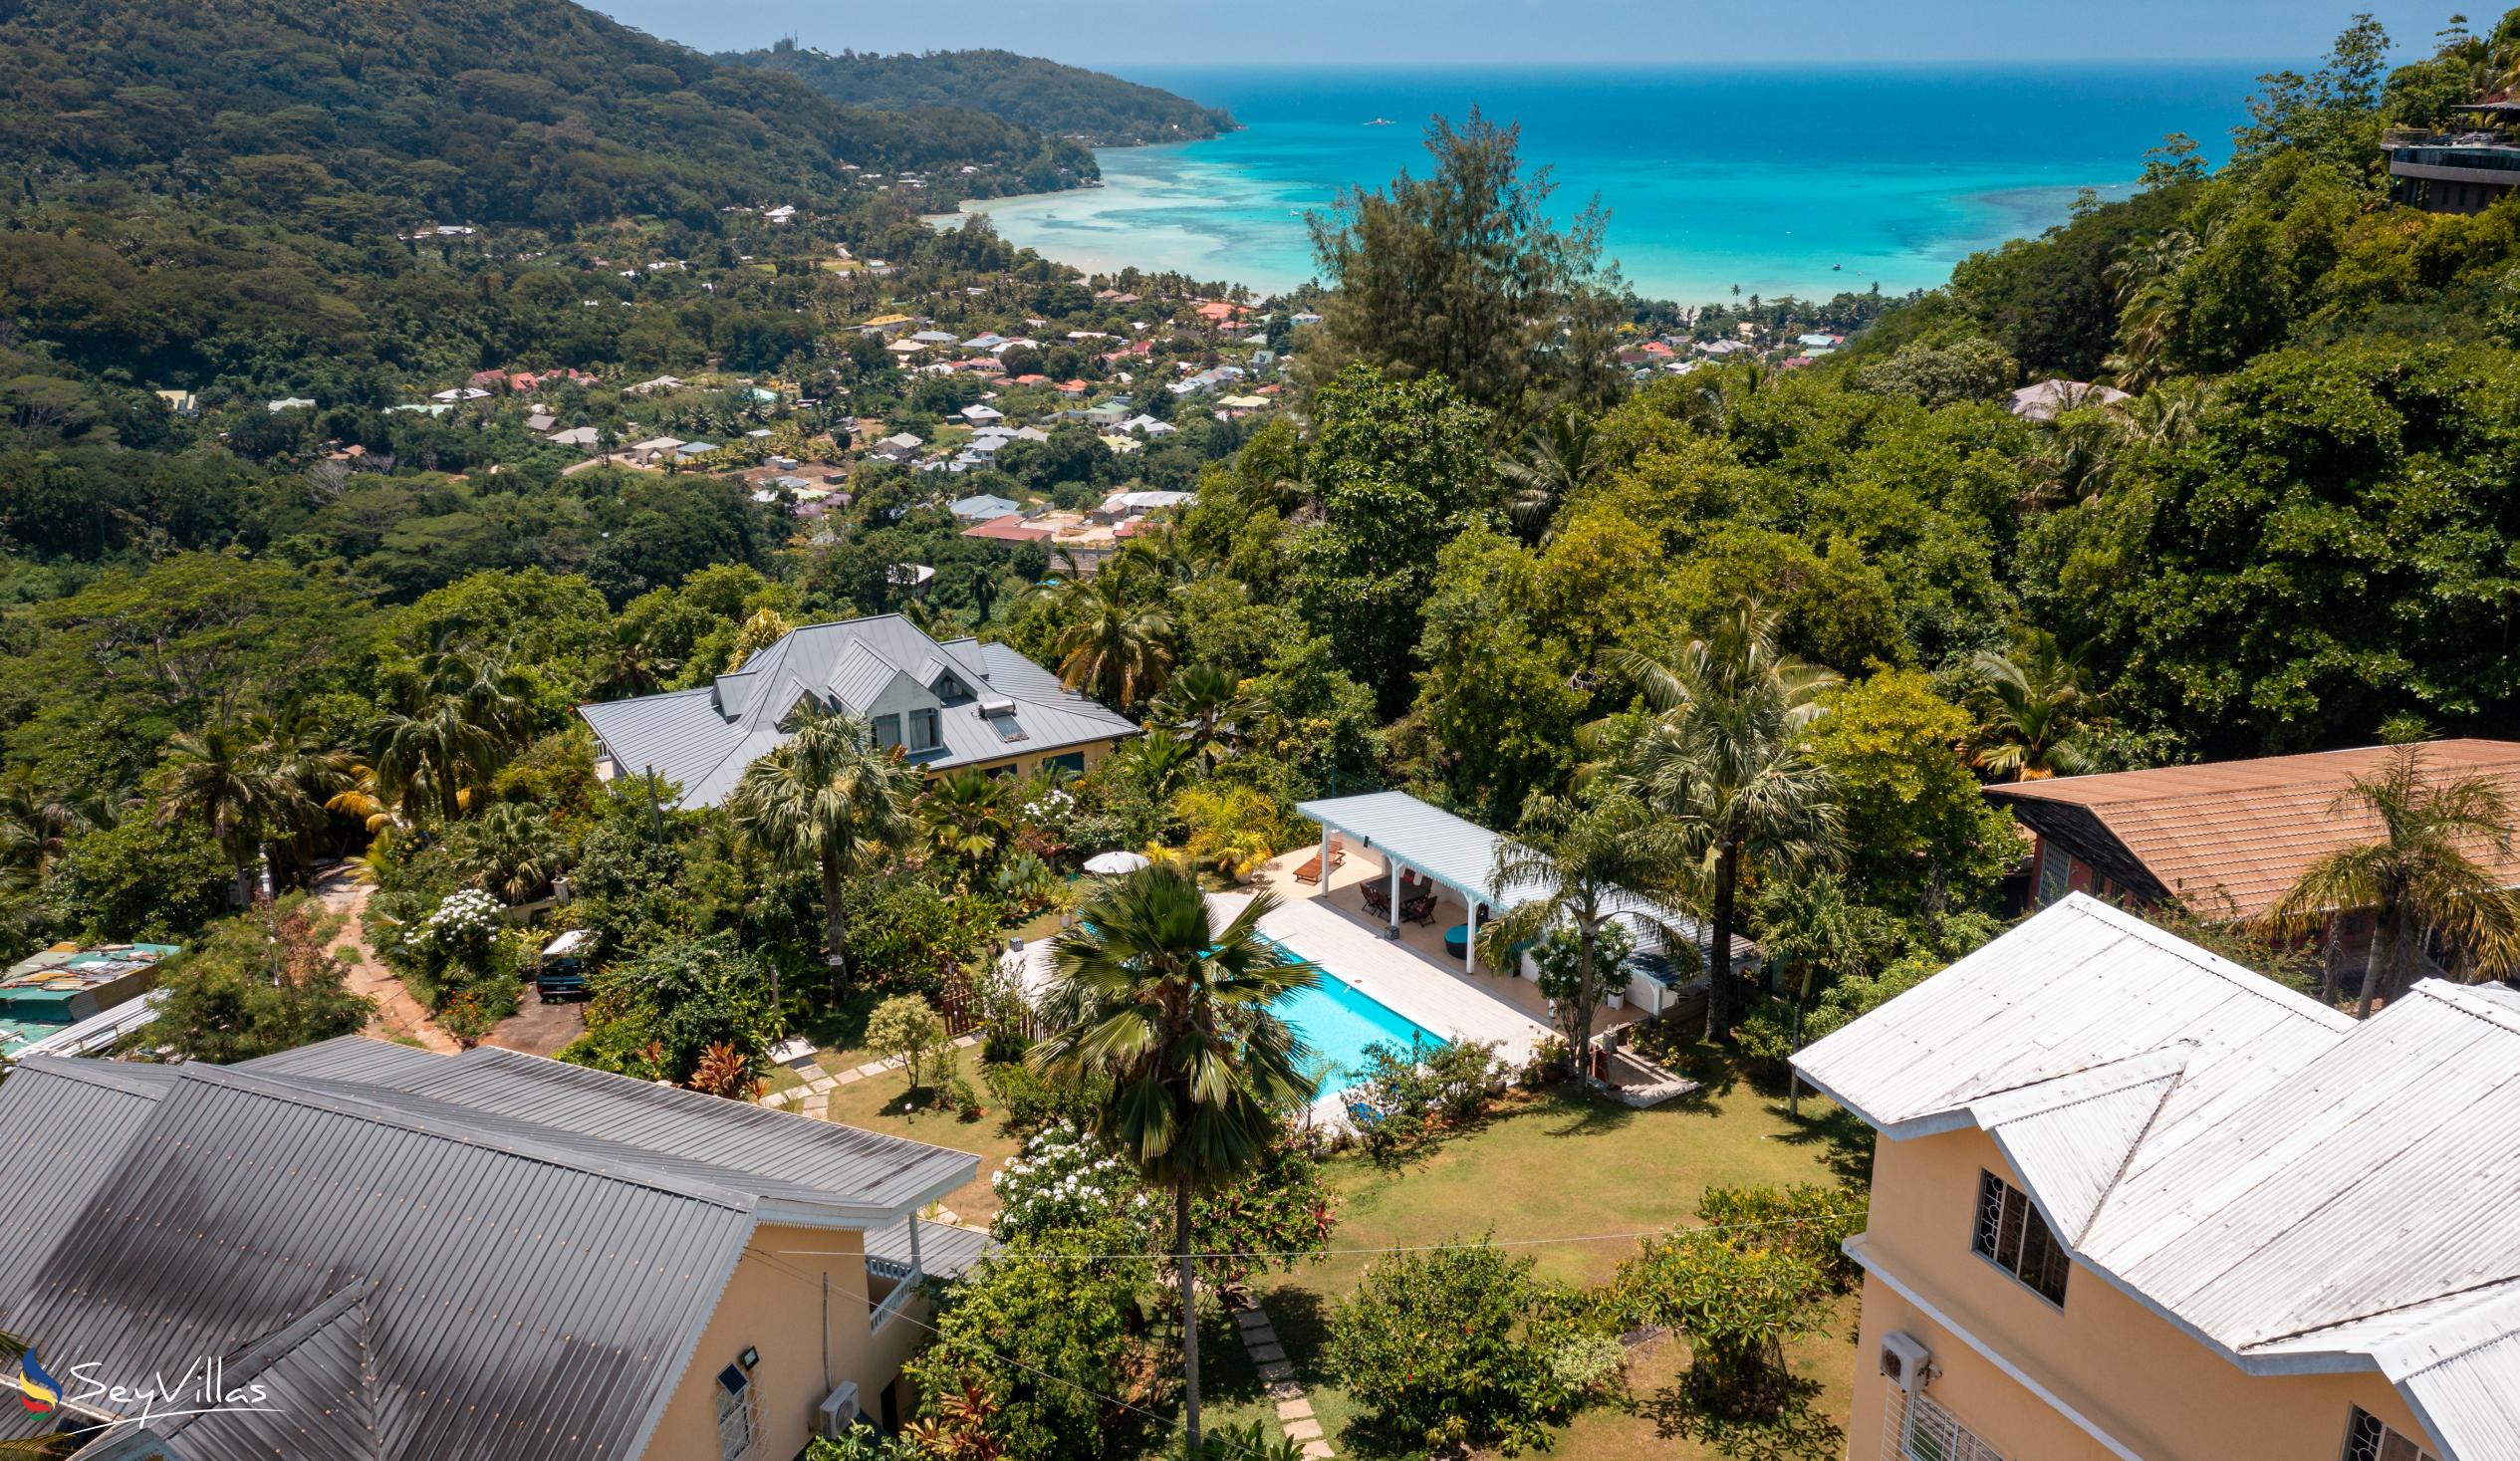 Foto 5: Residence Monte Cristo - Aussenbereich - Mahé (Seychellen)